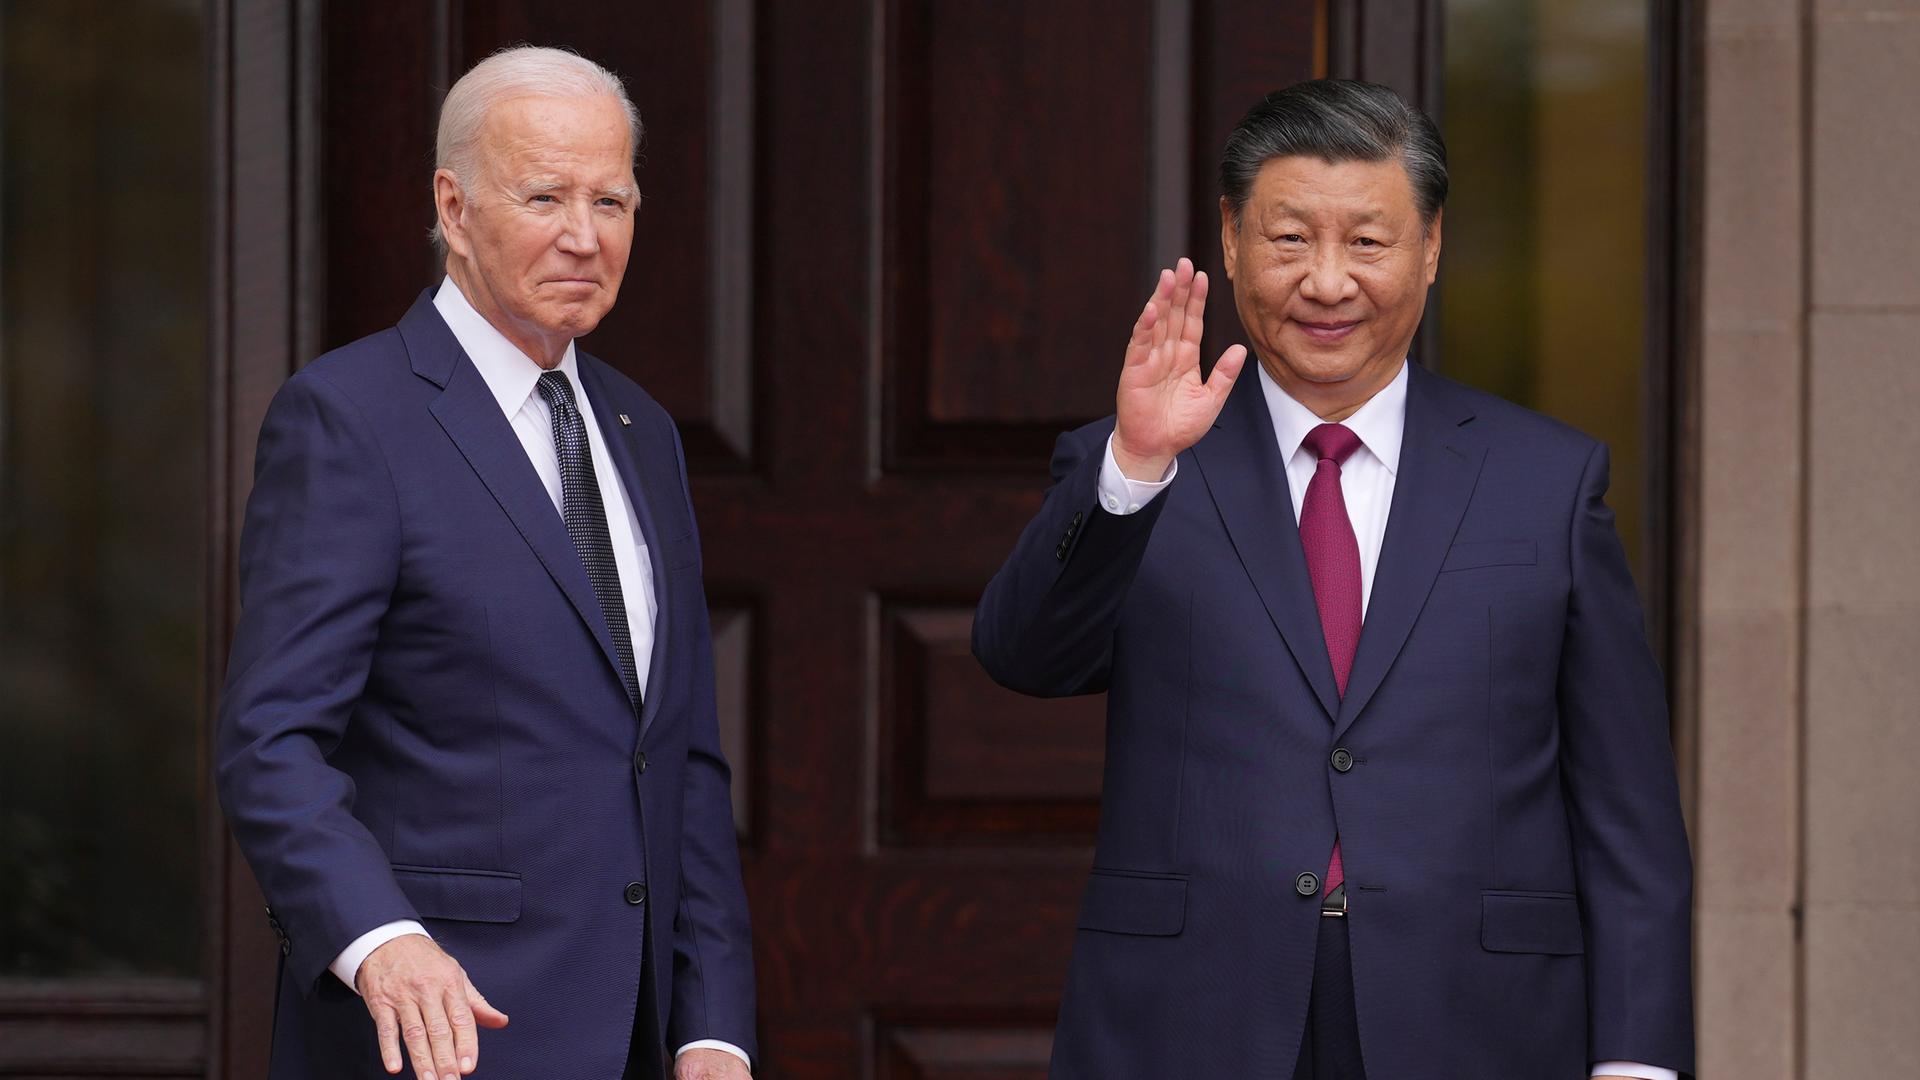 US-Präsident Biden und Chinas Staatschef Xi stehen vor einer dunklen Holztür und winken. Sie tragen beide dunkle Anzüge und Krawatten.